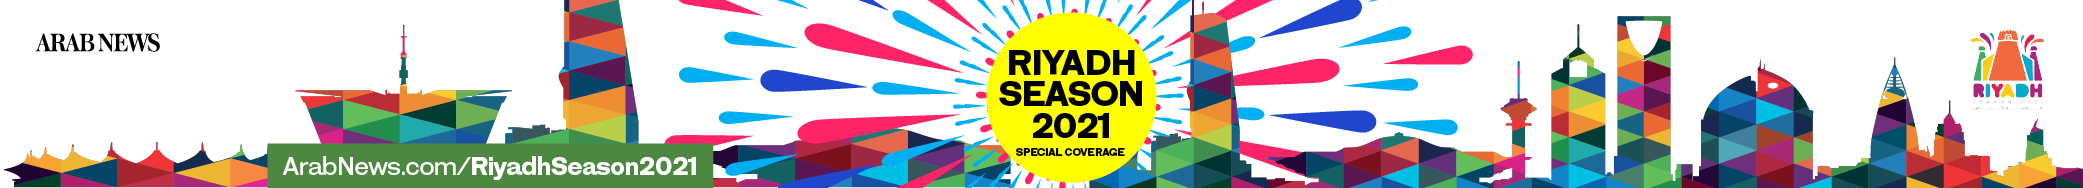 Riyadh season